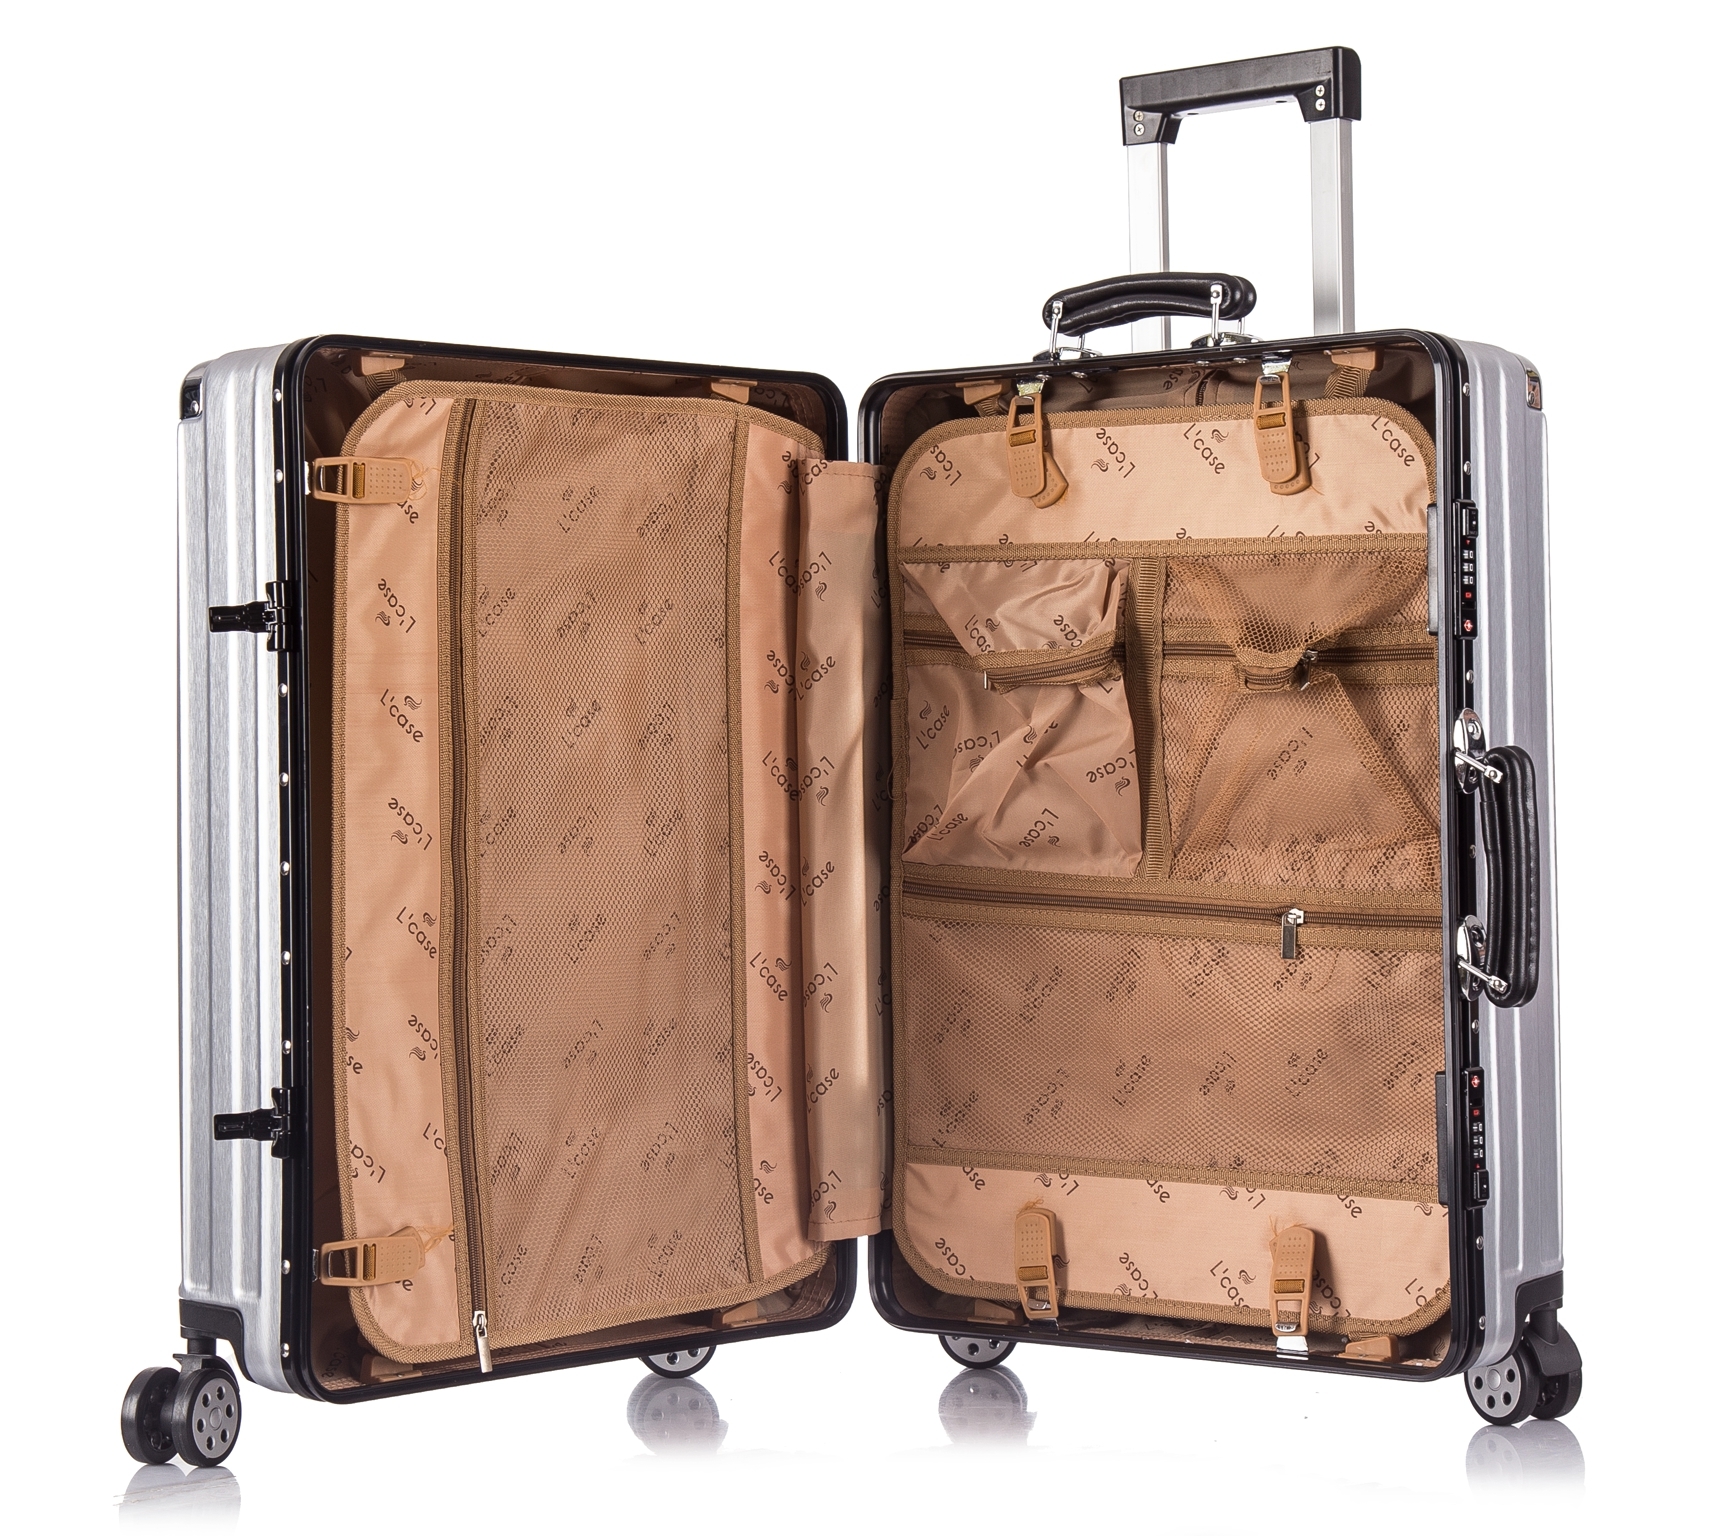 Большой сумка чемодан. Чемодан Verage wa882207w. L'Case чемодан Seoul. Trolley l чемодан 5951. Чемодан Ирвин 15083.